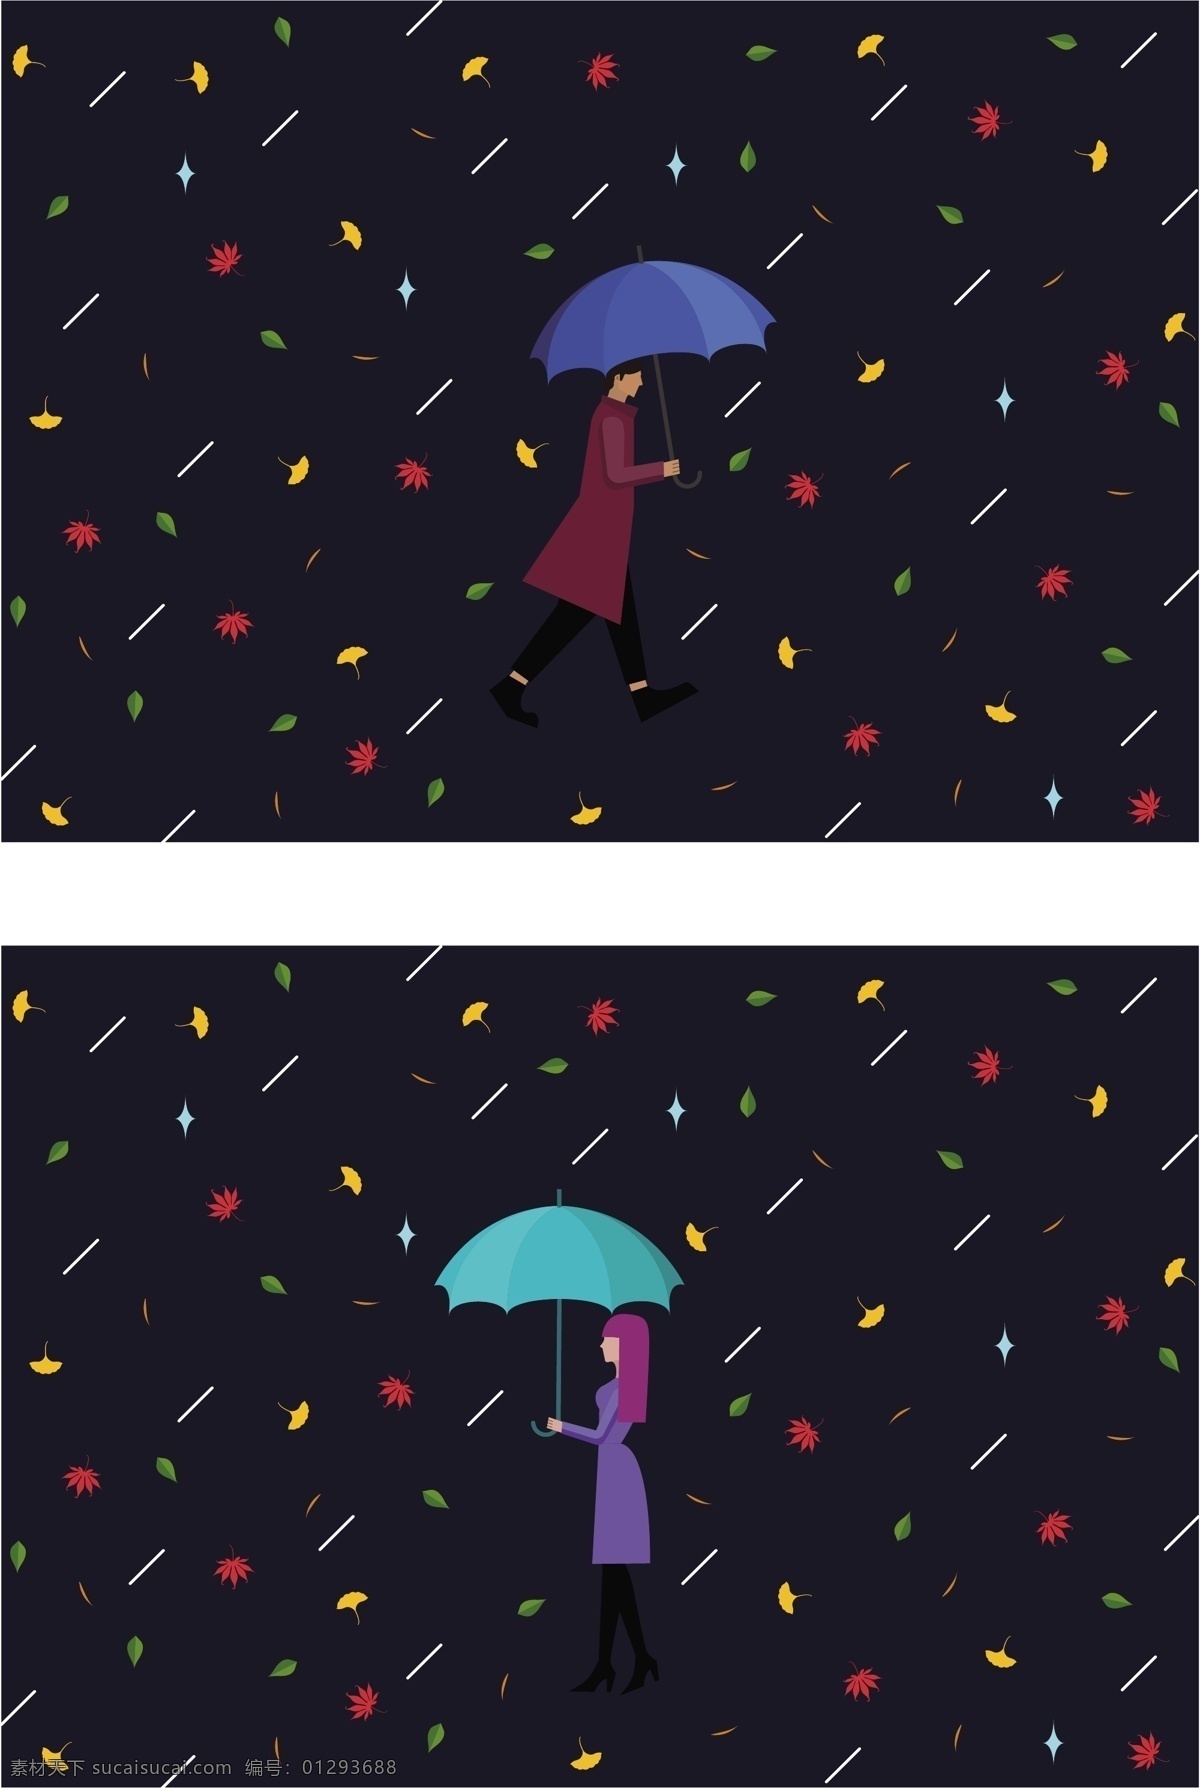 原创 秋季 落叶 雨 中 撑伞 行人 秋天 装饰 色彩 图案 简约 下雪 雨伞 男人 女人 行走 背景